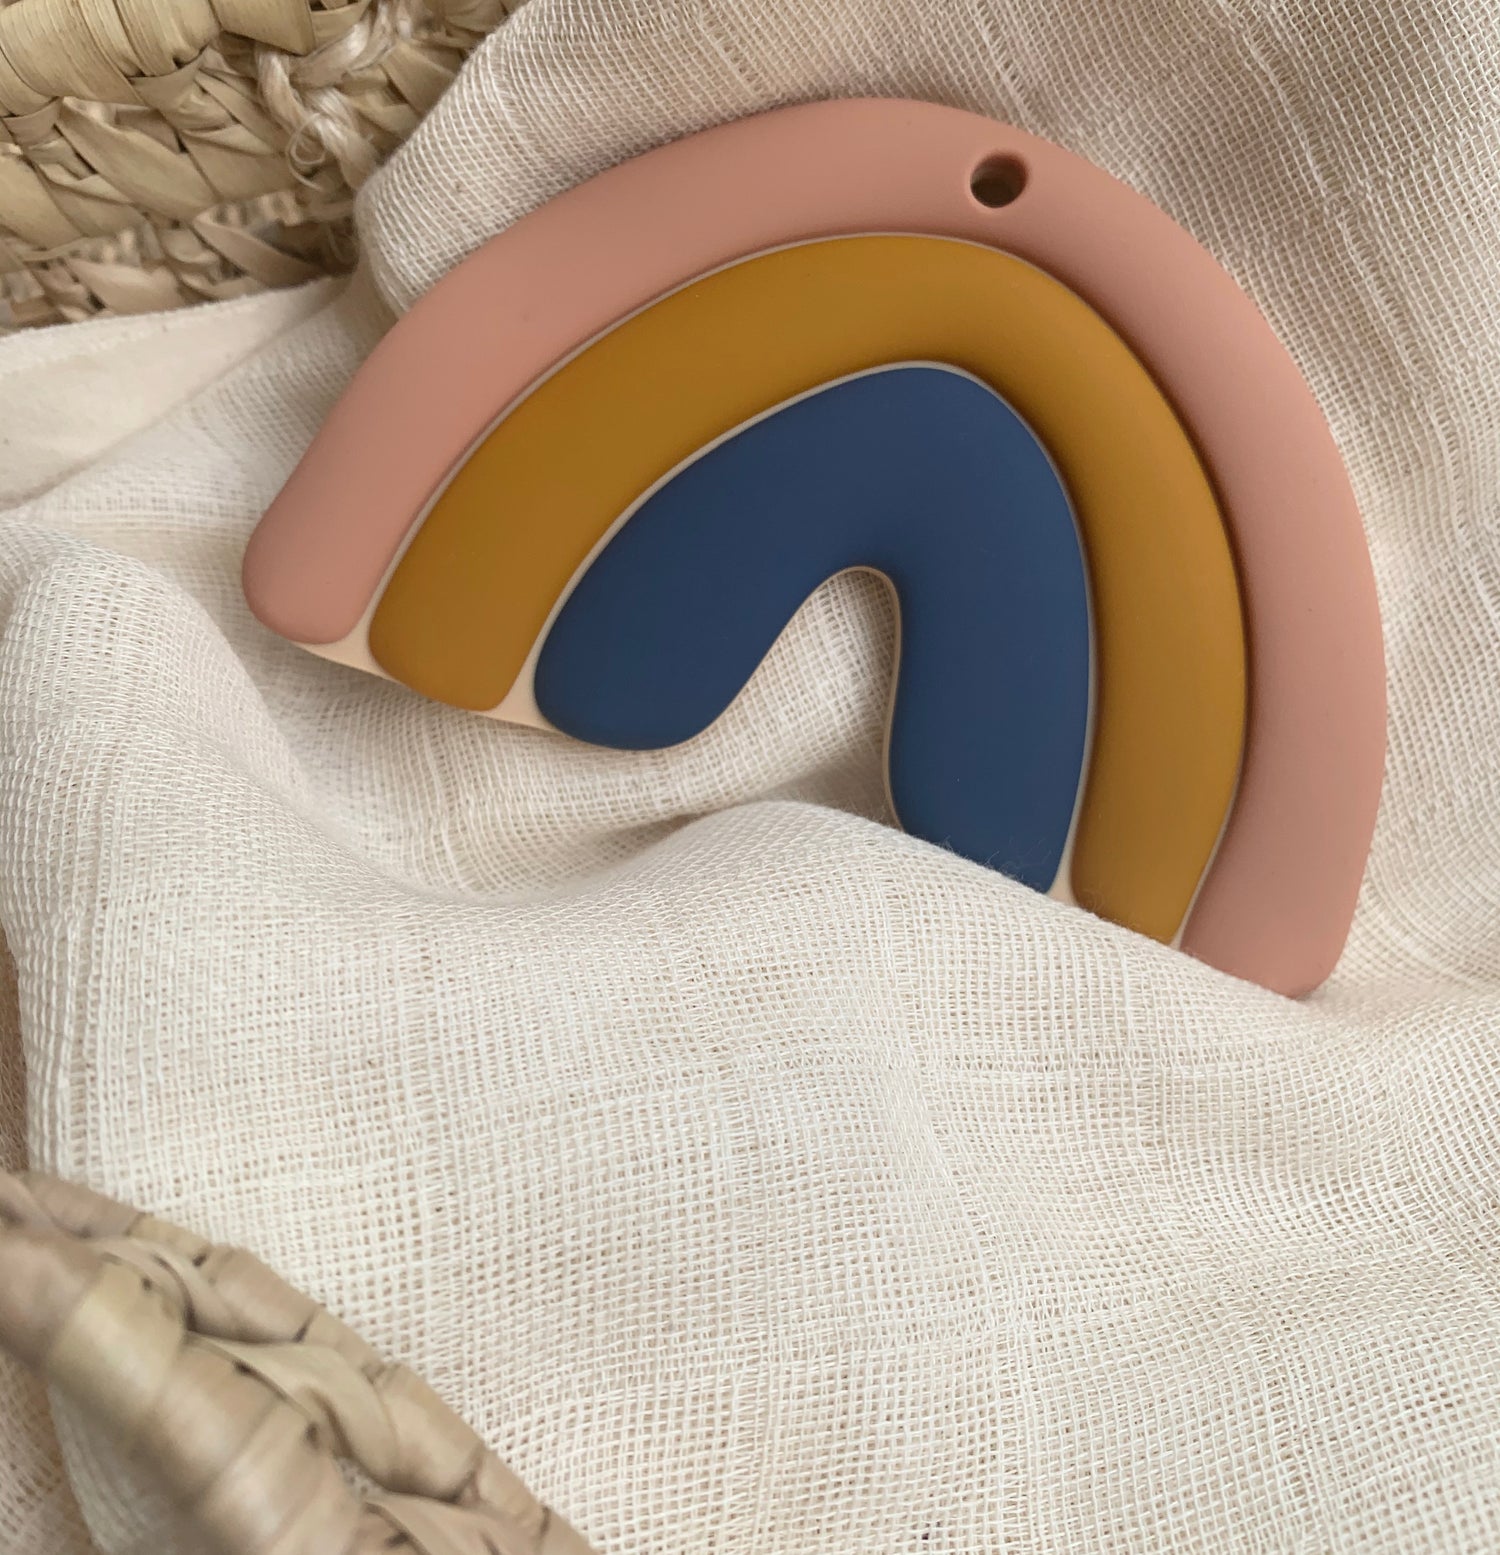 Jouet de dentition en silicone alimentaire en forme d'arc en ciel à trois couleurs douces et chaleureuses : vieux rose, jaune moutarde et bleu océan. Design minimaliste, élégant et raffiné. 